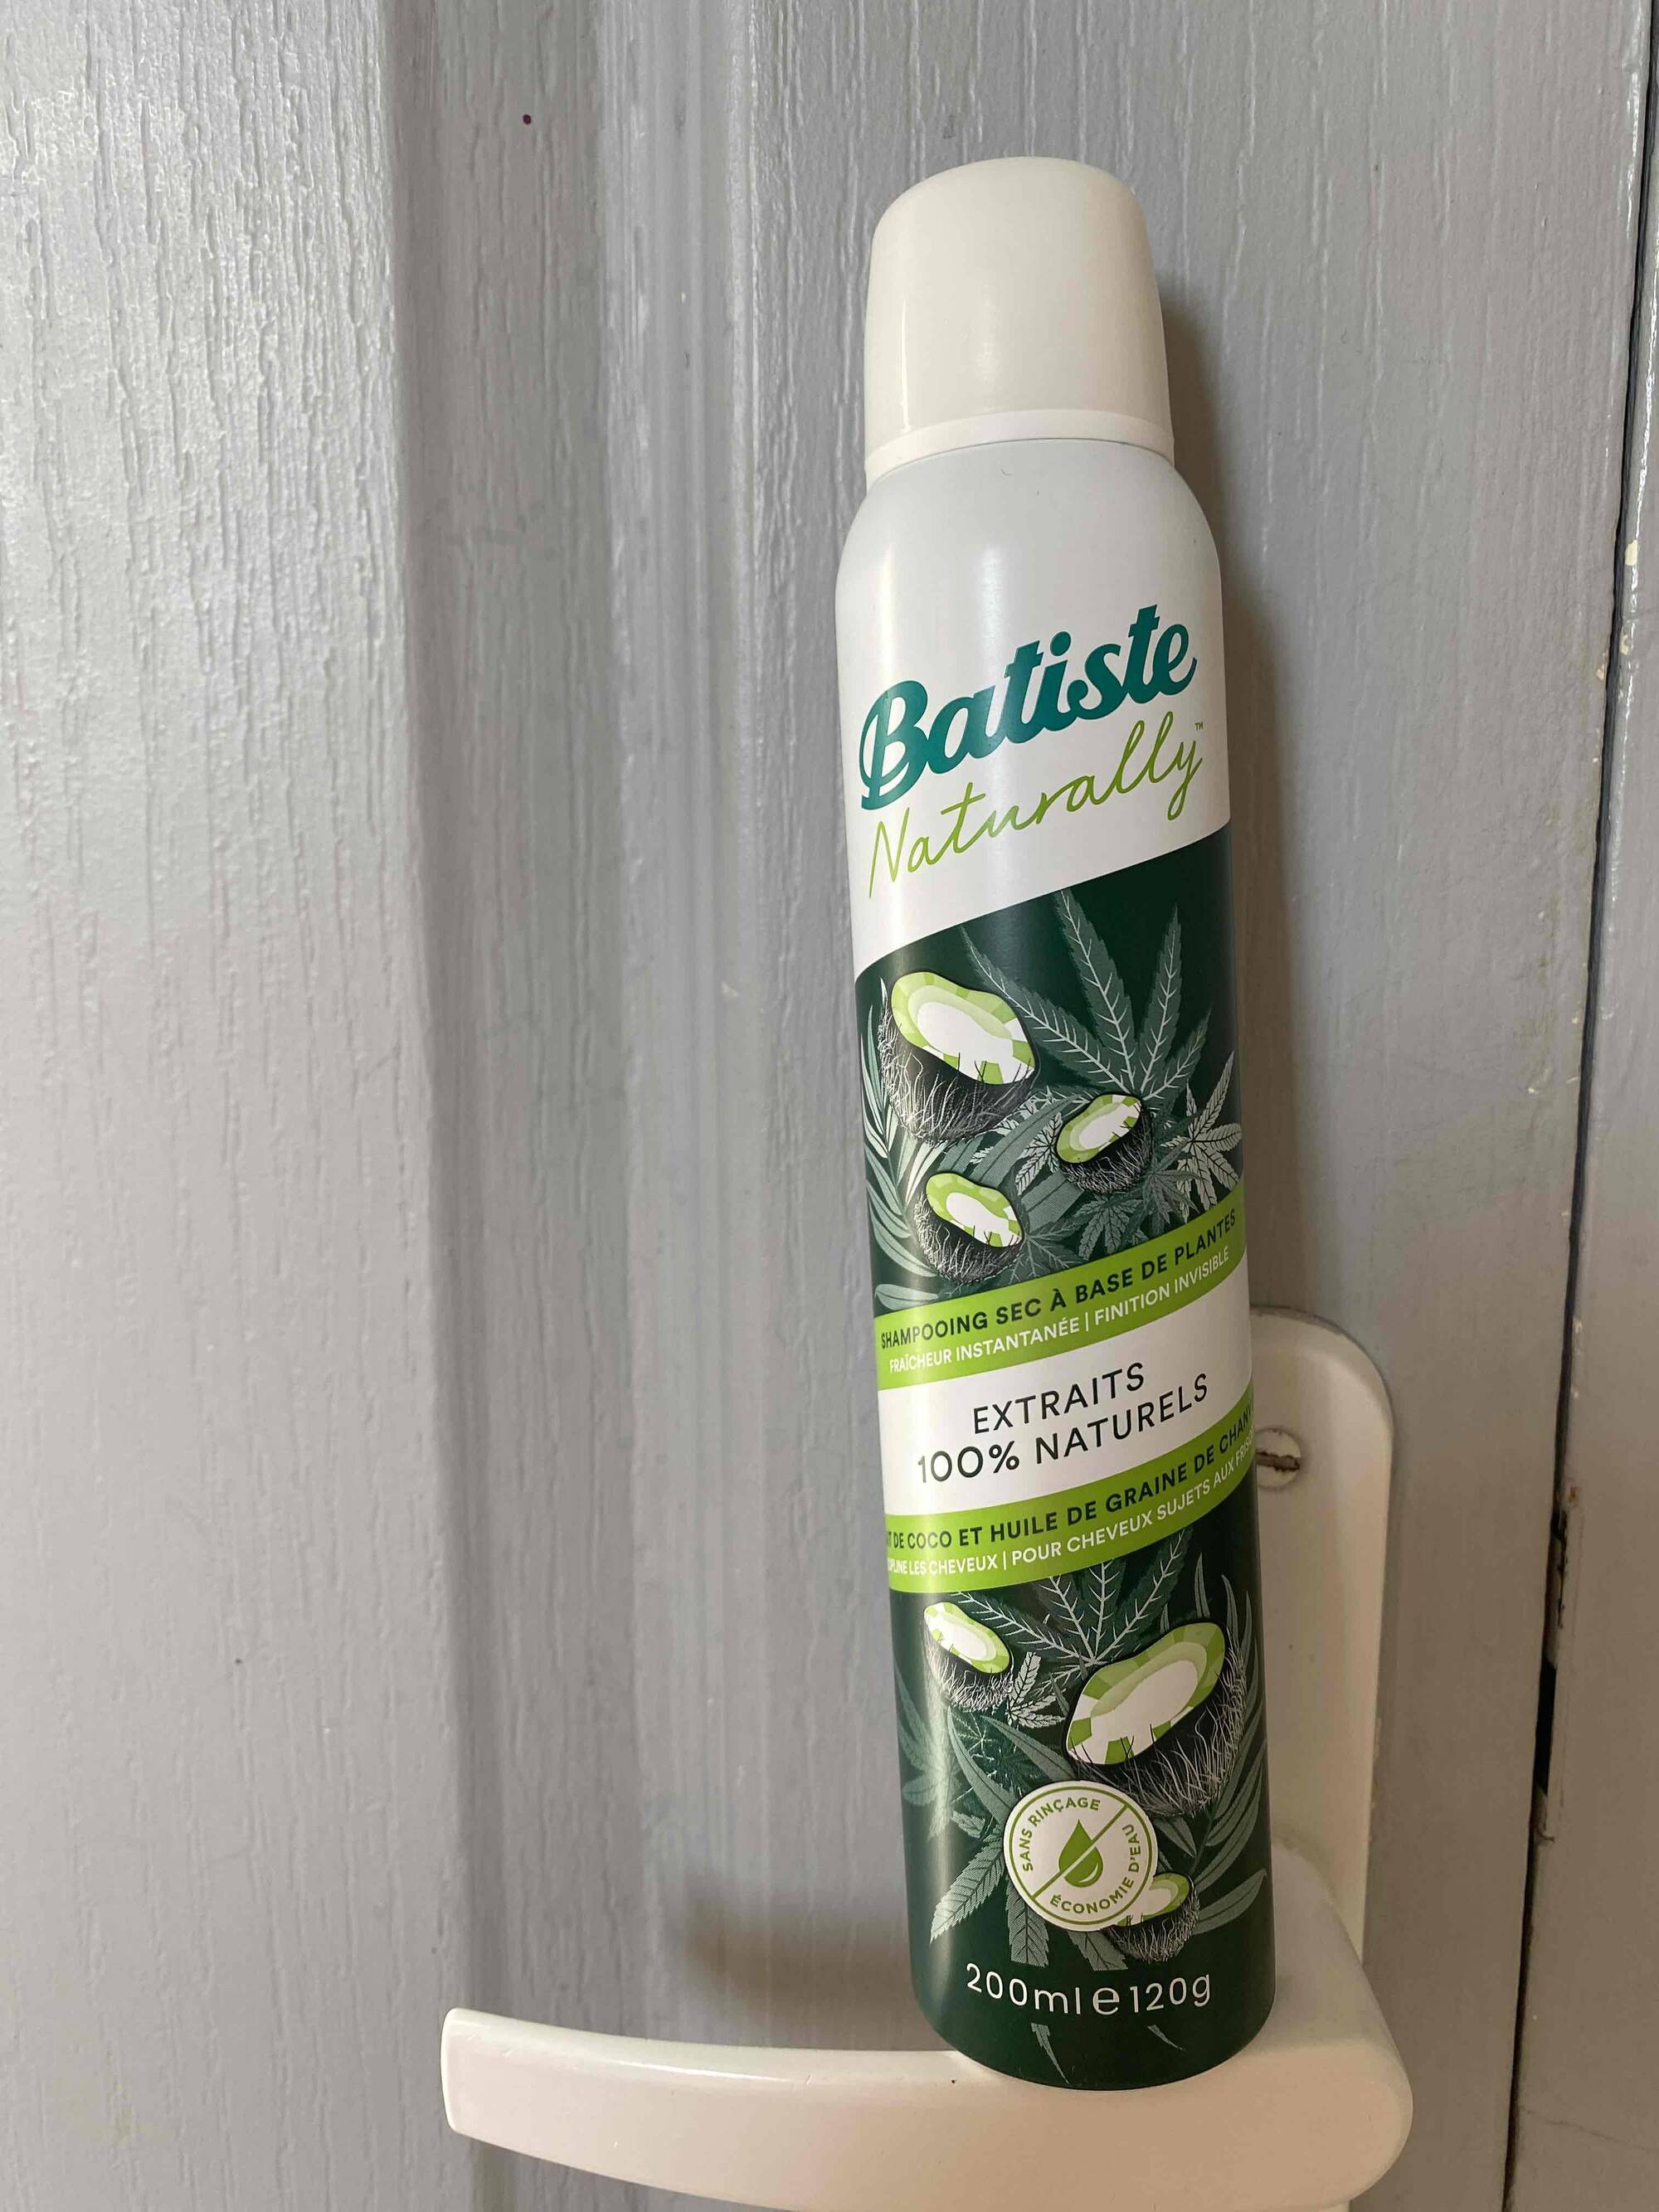 BATISTE - Naturally - Shampooing sec à base de plantes